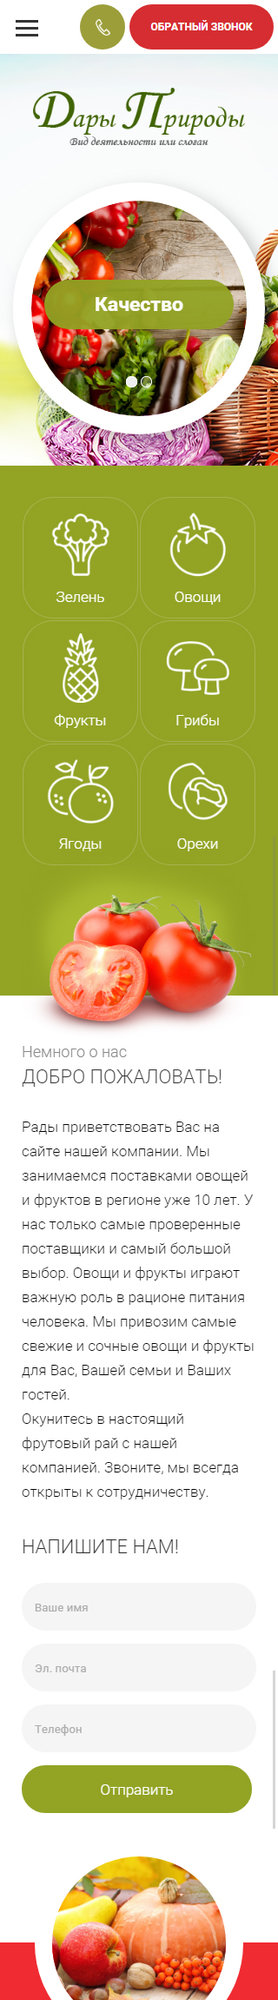 Готовый Сайт-Бизнес № 2077264 - Овощи и фрукты (Мобильная версия)